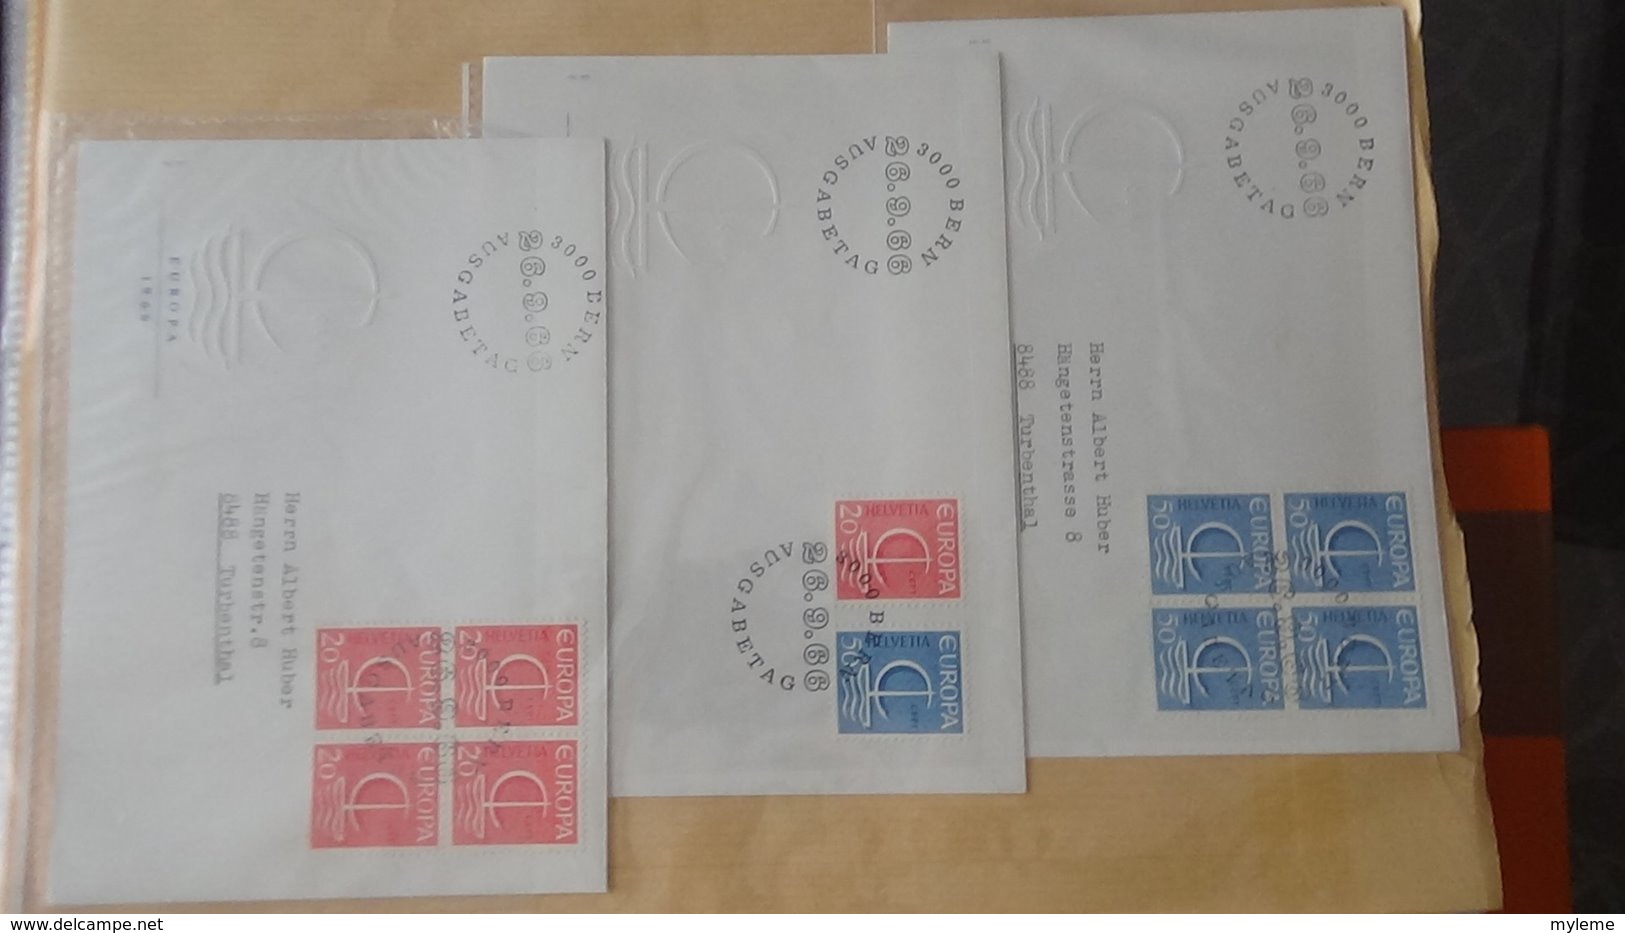 Dispersion d'une collection d'enveloppe 1er jour et autres dont 162 EUROPA Suisse